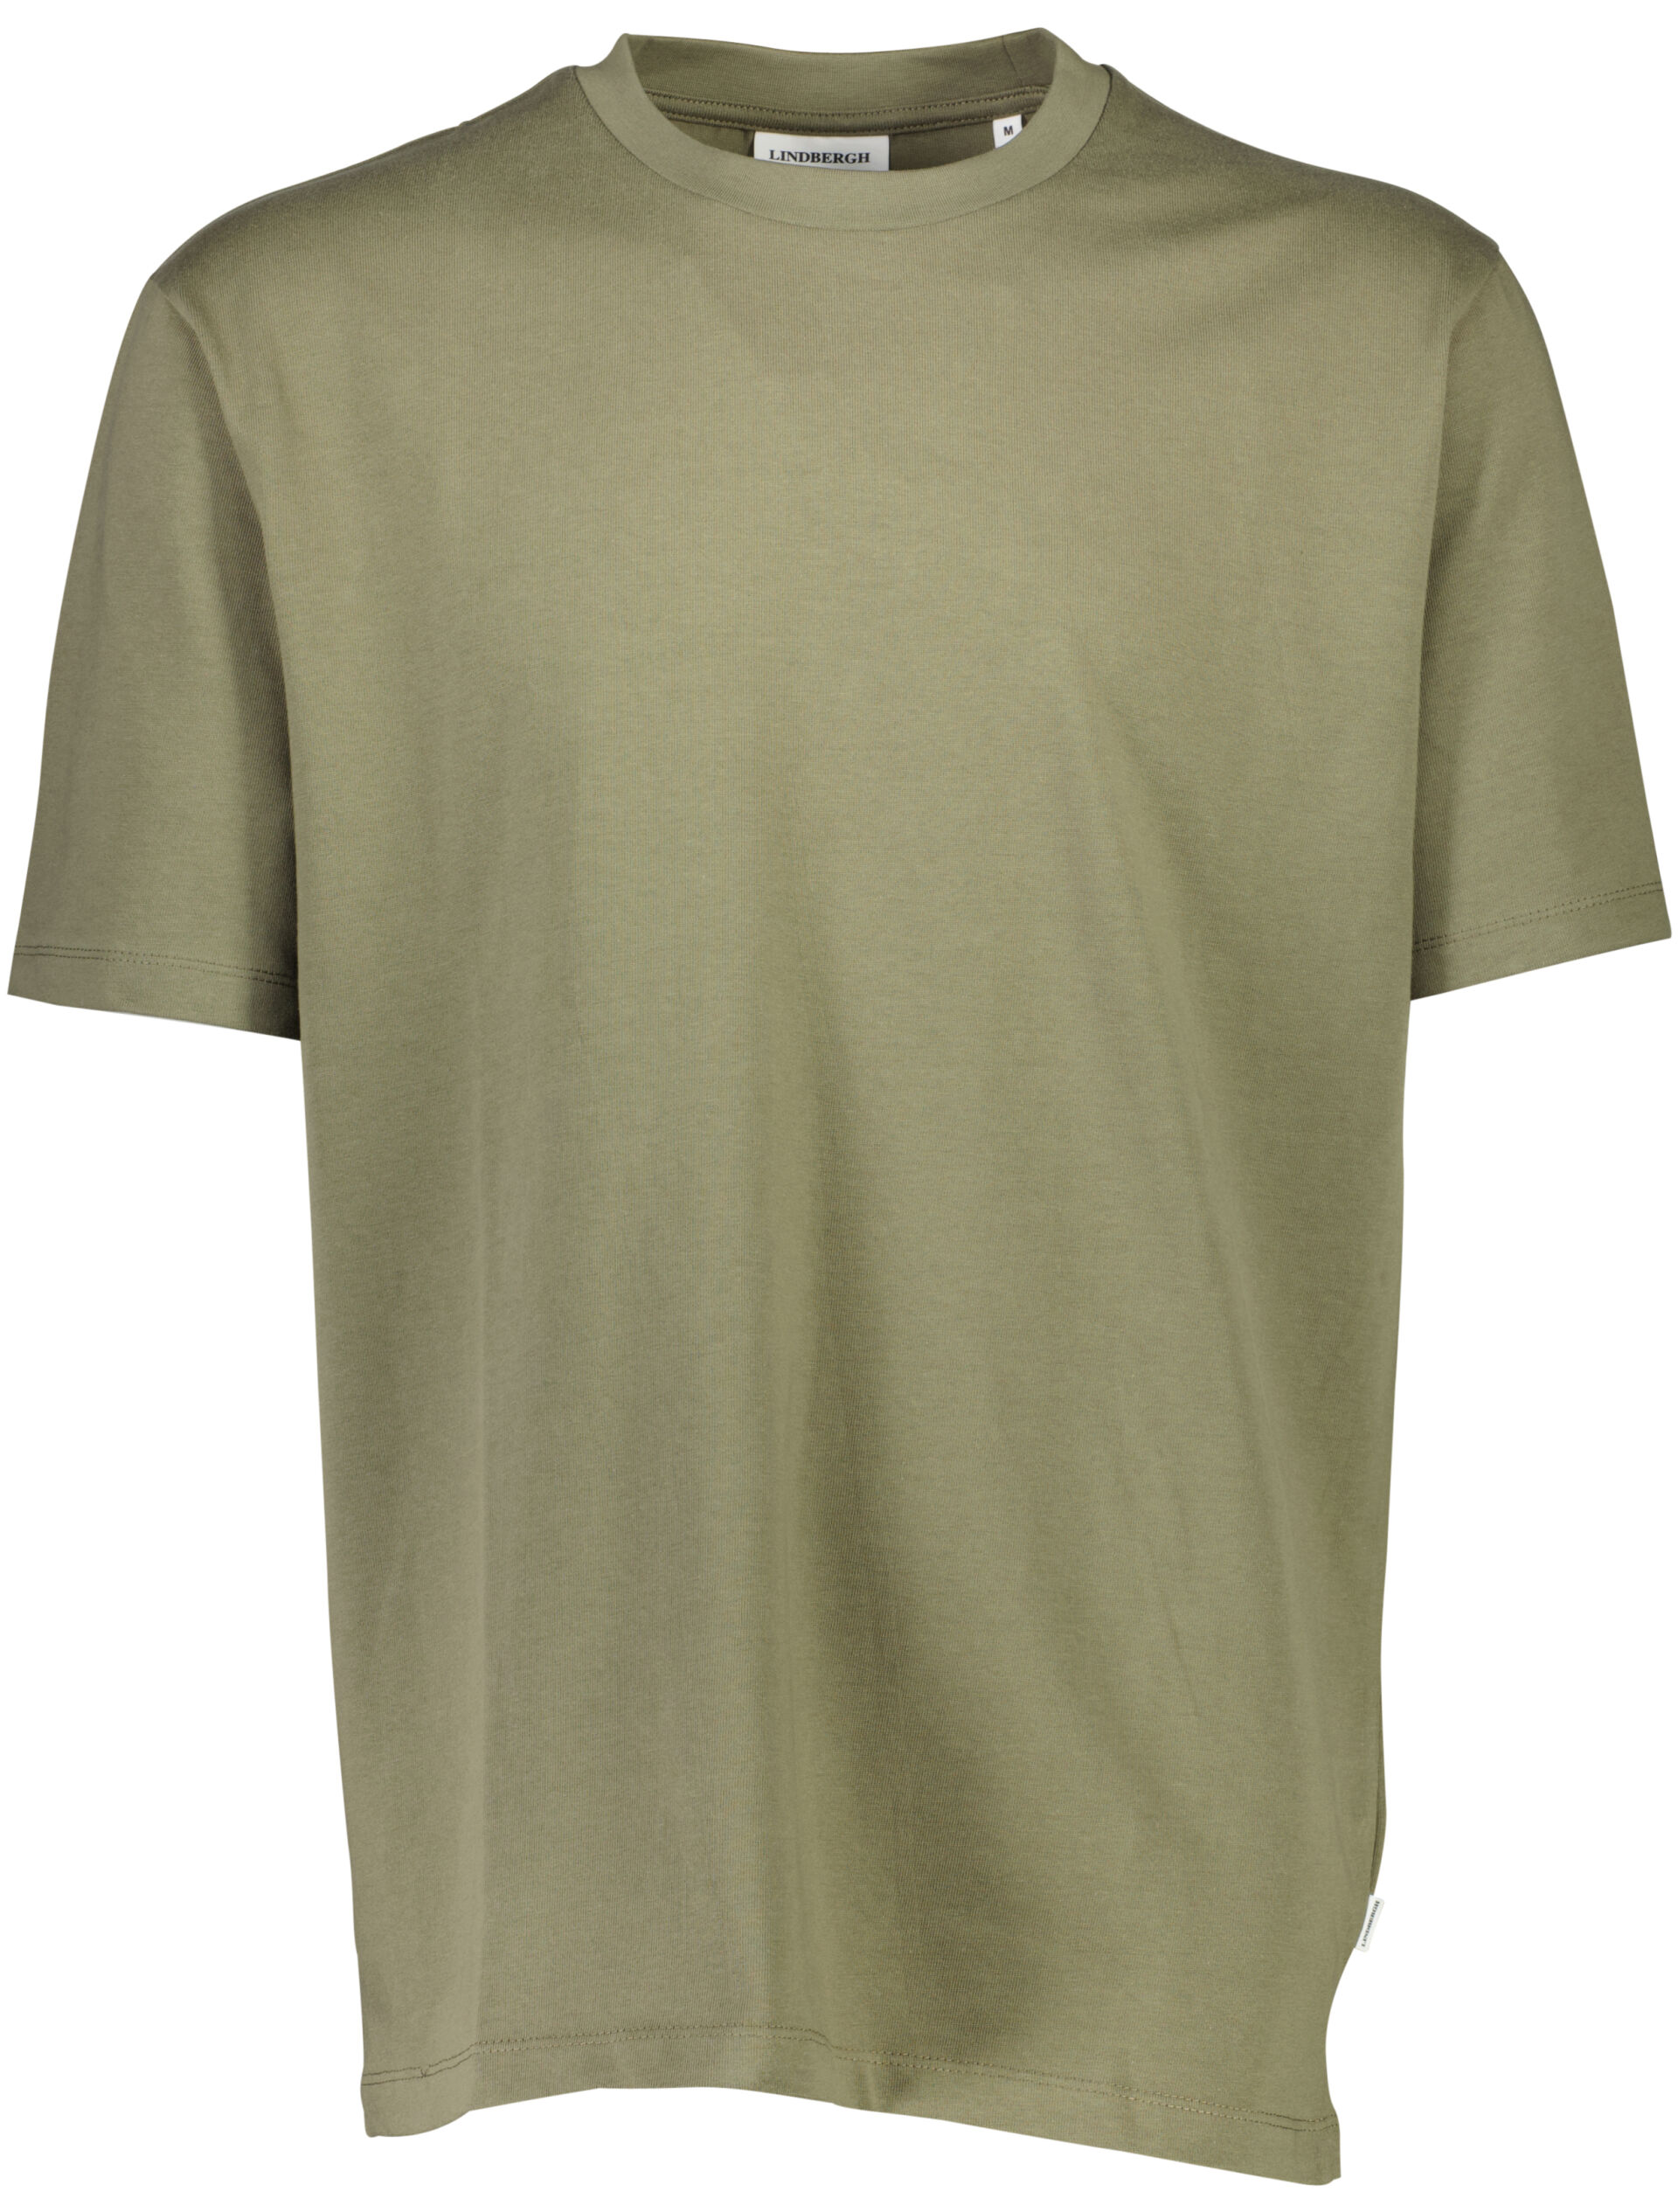 T-shirt T-shirt Grün 30-400120